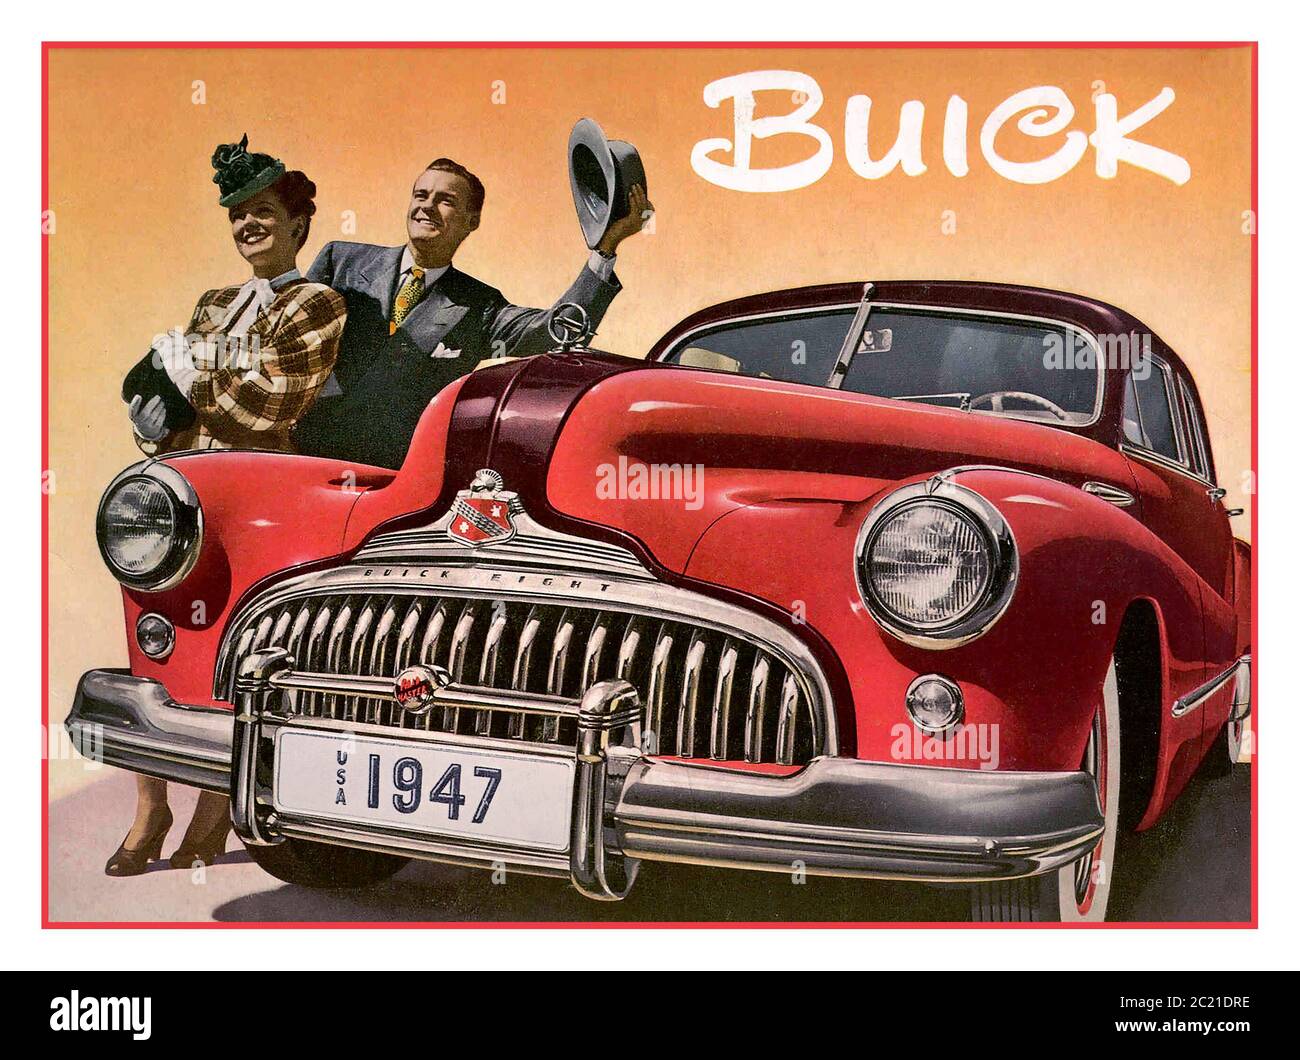 BUICK 1947 Vintage American Automobile Poster per Buick Super Un'automobile di dimensioni standard da 248 cu in (4.1 L) 1947 Buick - Poster pubblicitario promozionale // dopo la guerra mondiale II American Car produzione flamboyant 1940's stile di moda America USA Foto Stock